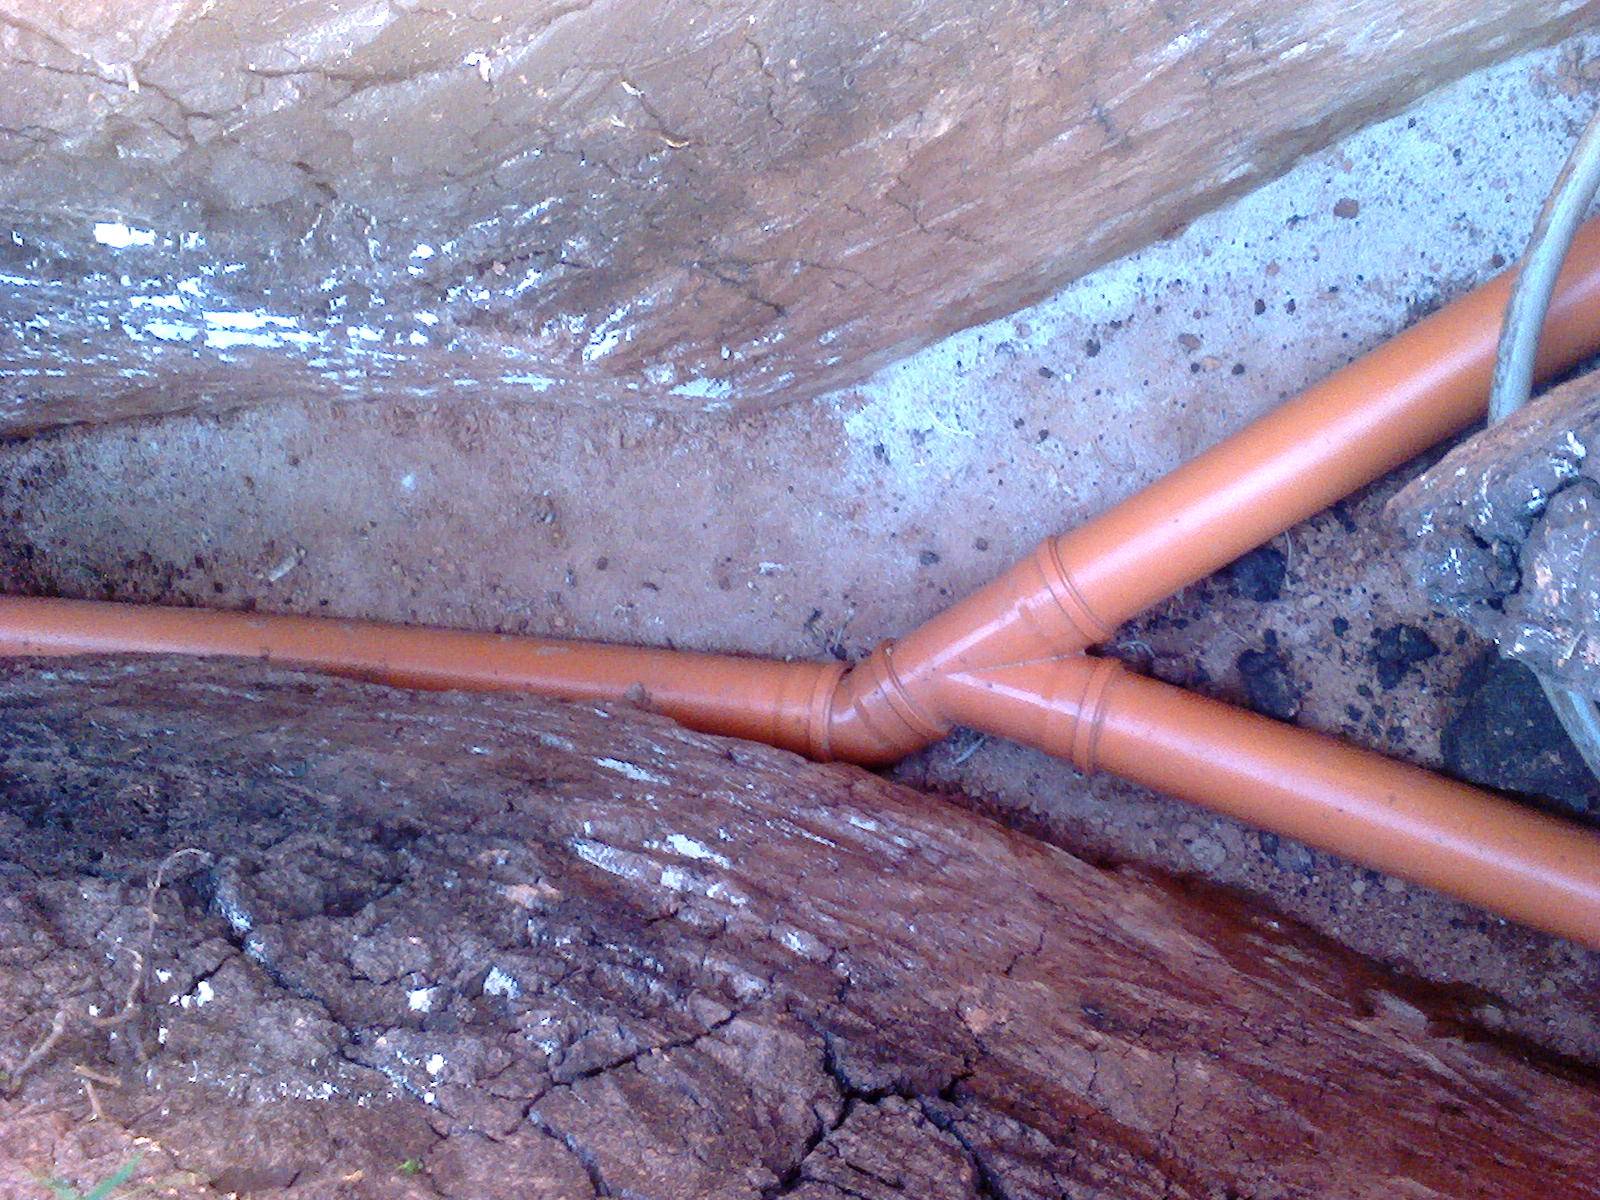 Монтаж наружных сетей водопровода и канализации: прокладка внешнего водоснабжения